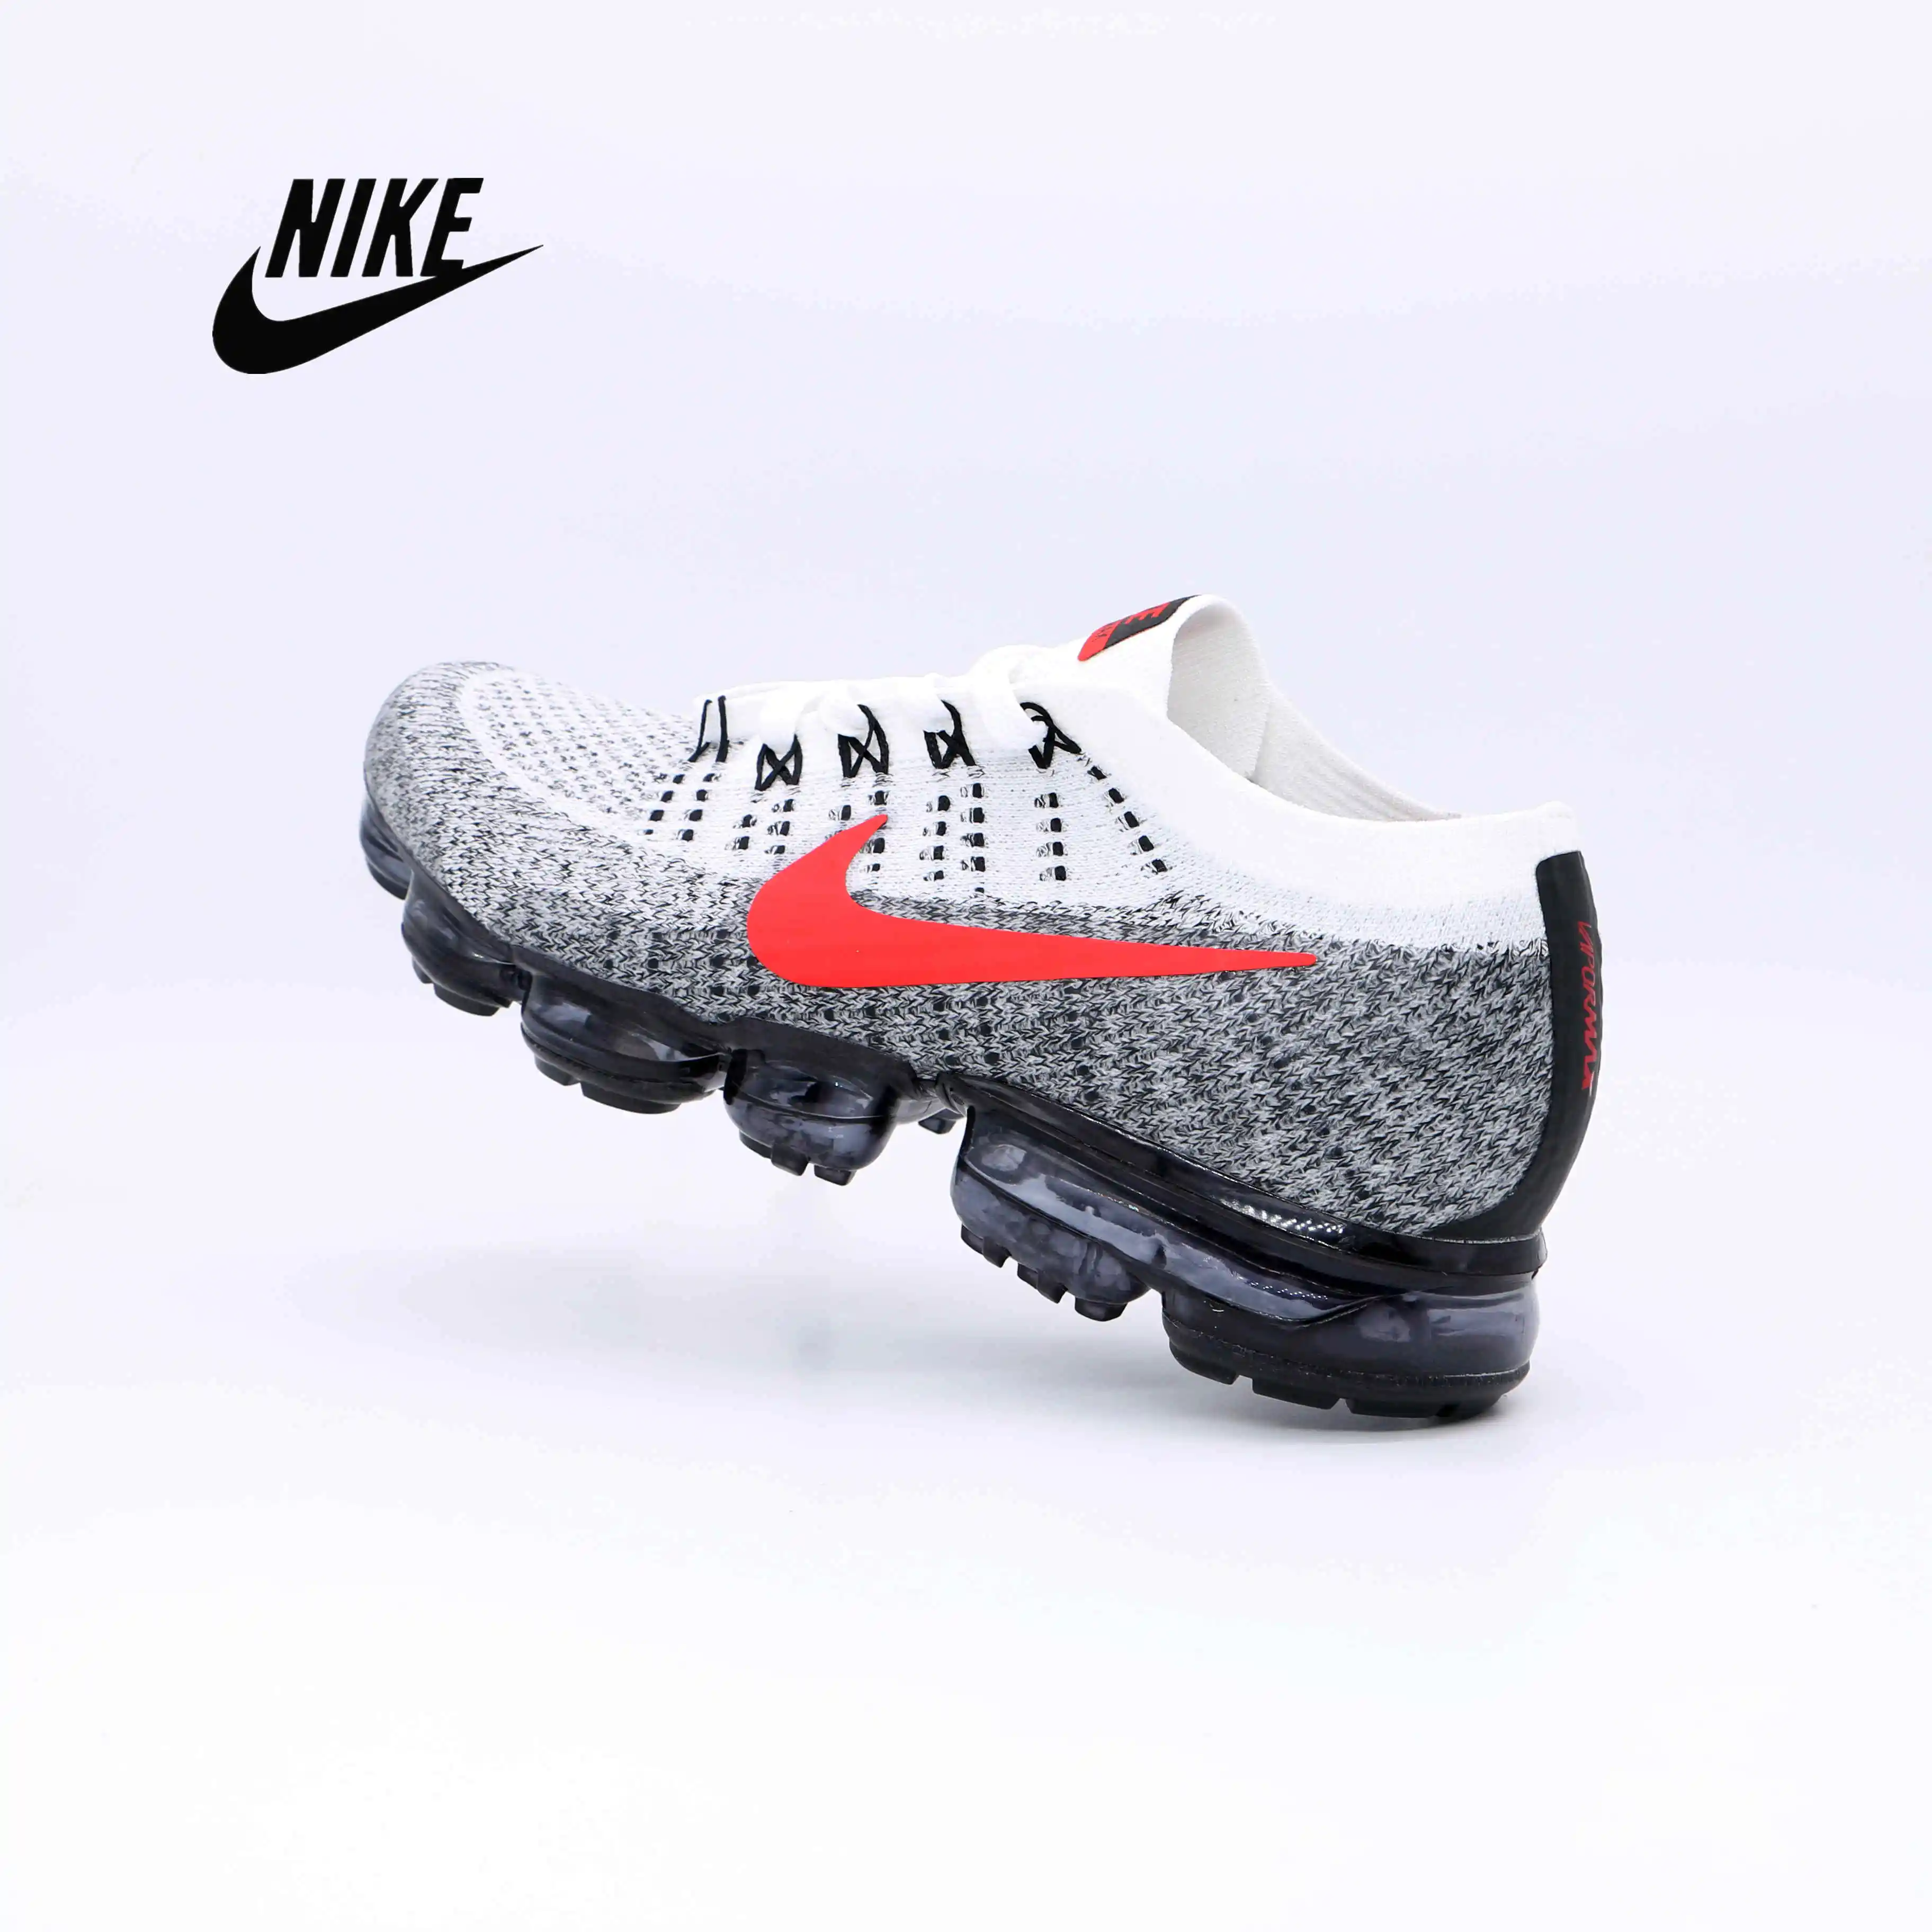 Nike-aire vapormax 2018 hombres de las mujeres zapatos de moda transpirable deportes aire libre zapatillas de deporte negro gris blanco _ - AliExpress Mobile